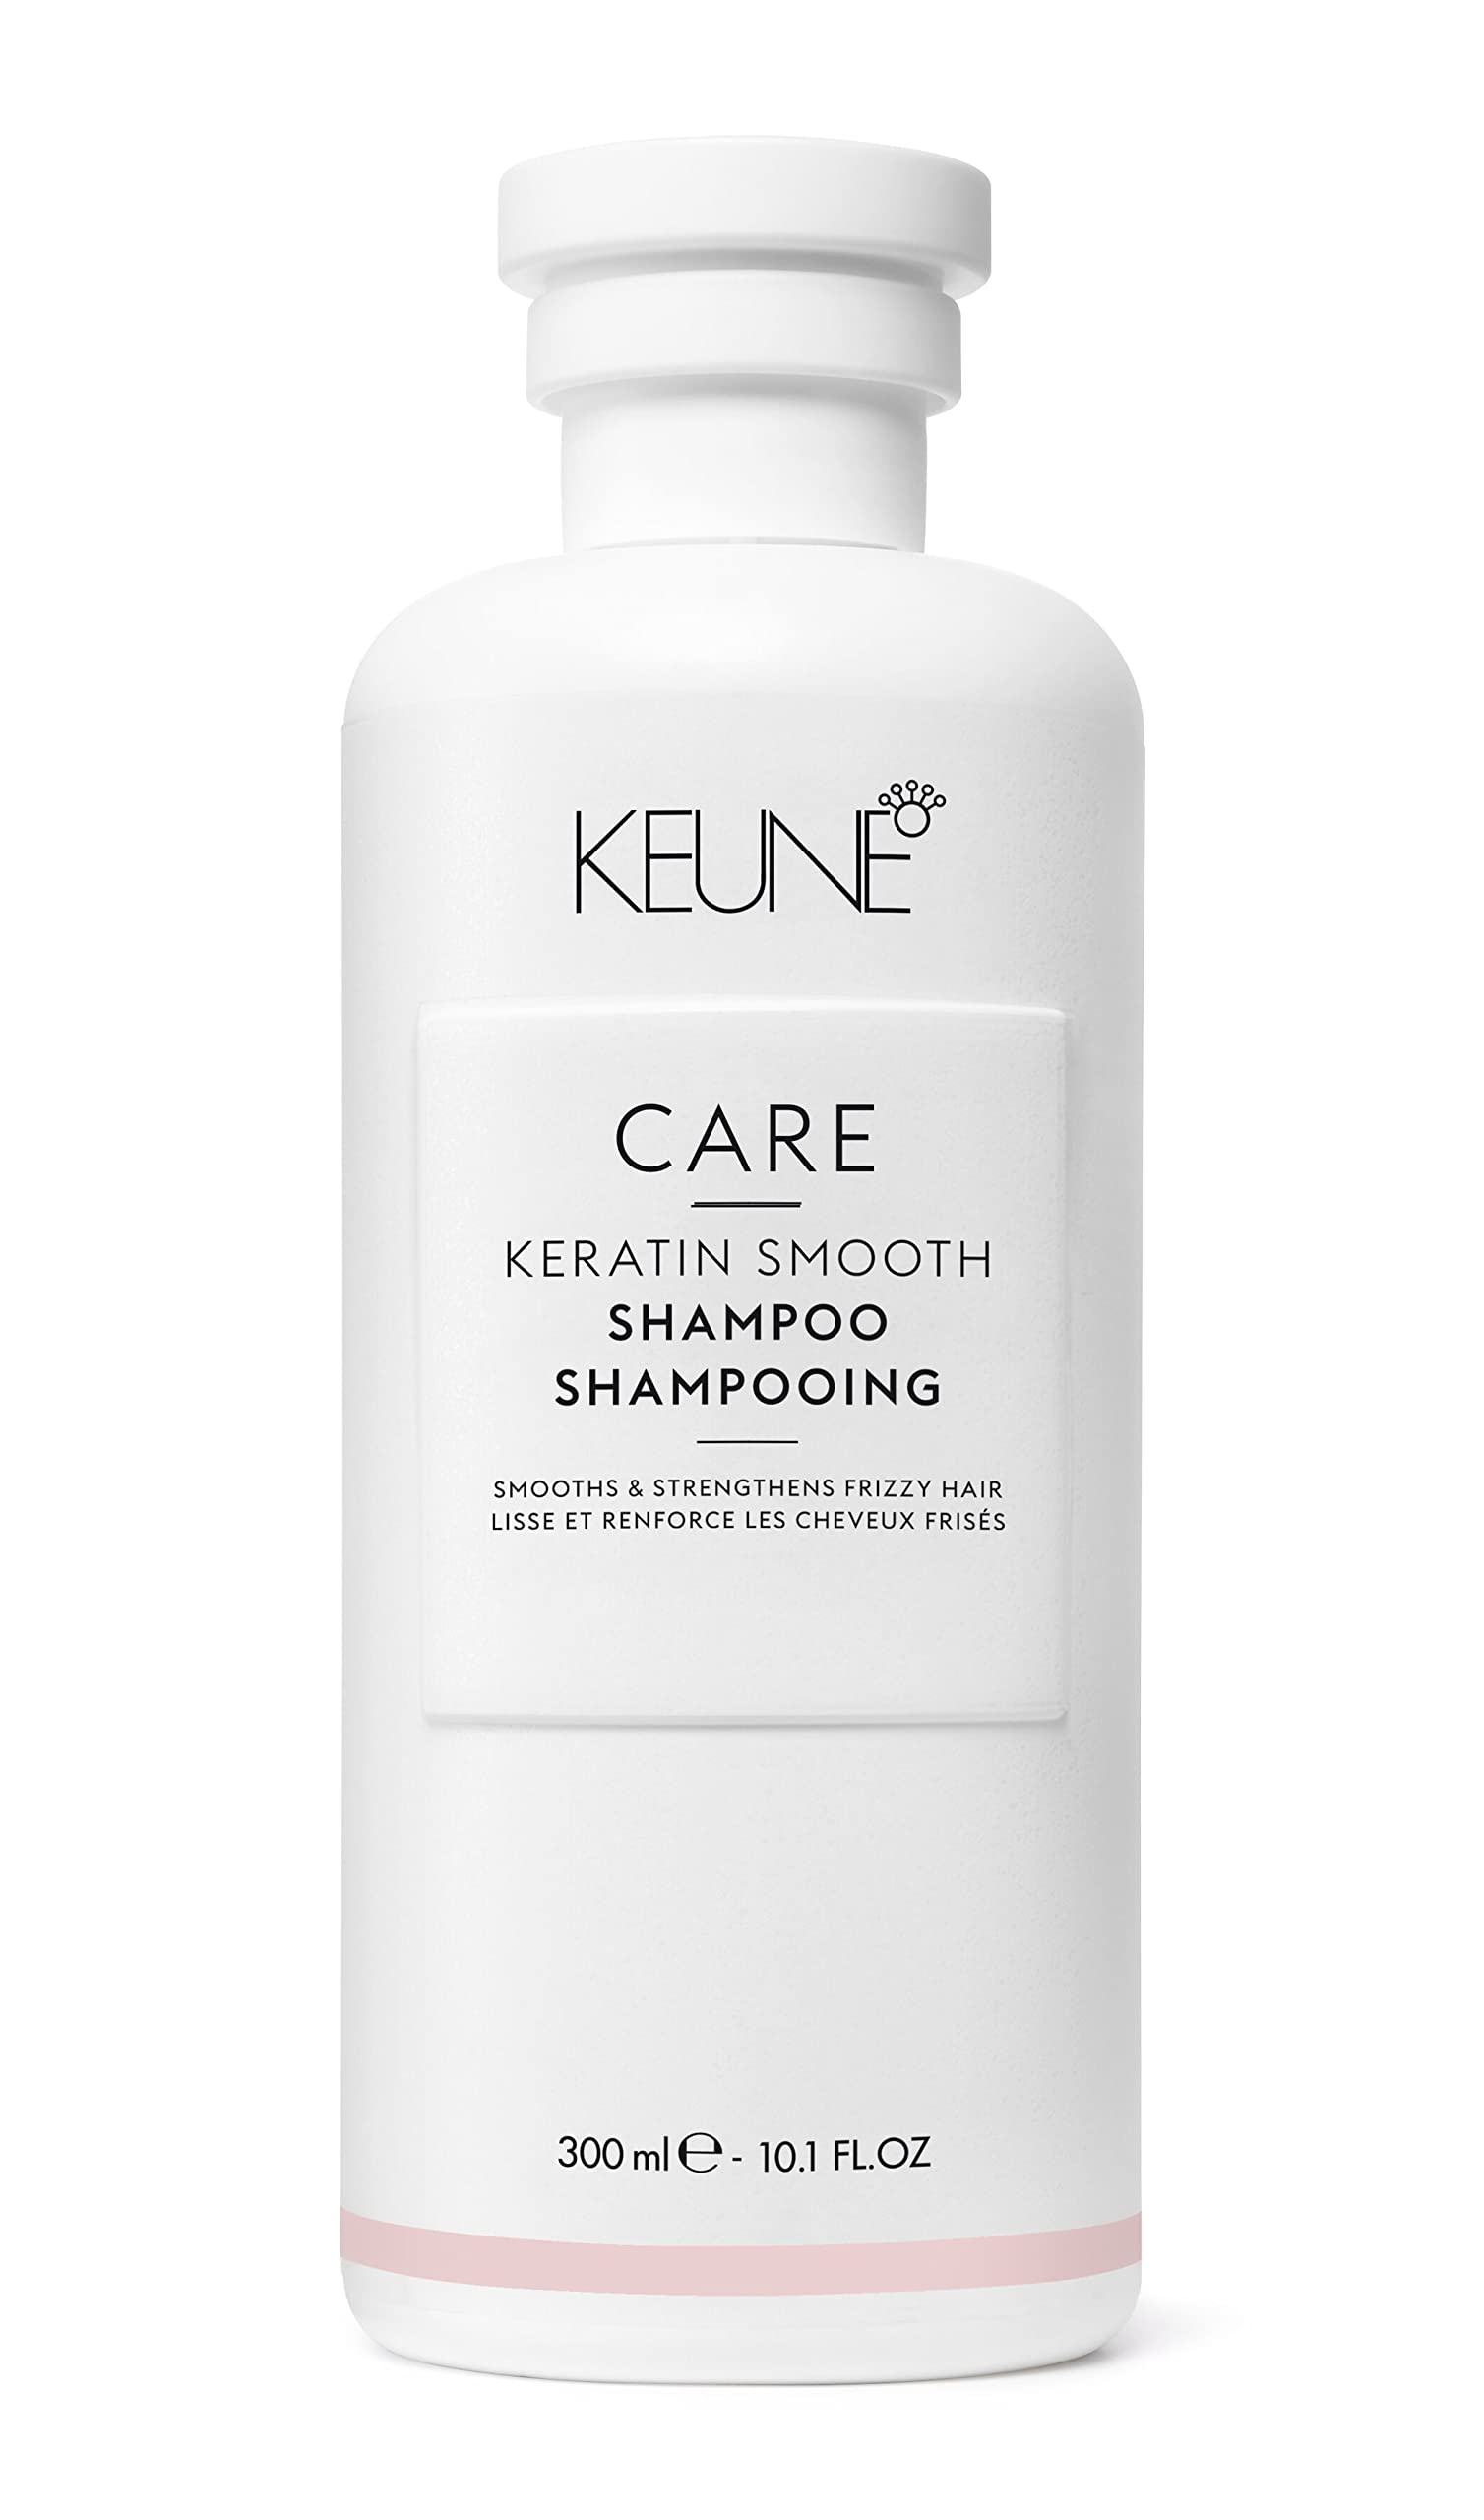 keune szampon po keratynowym prostowaniu